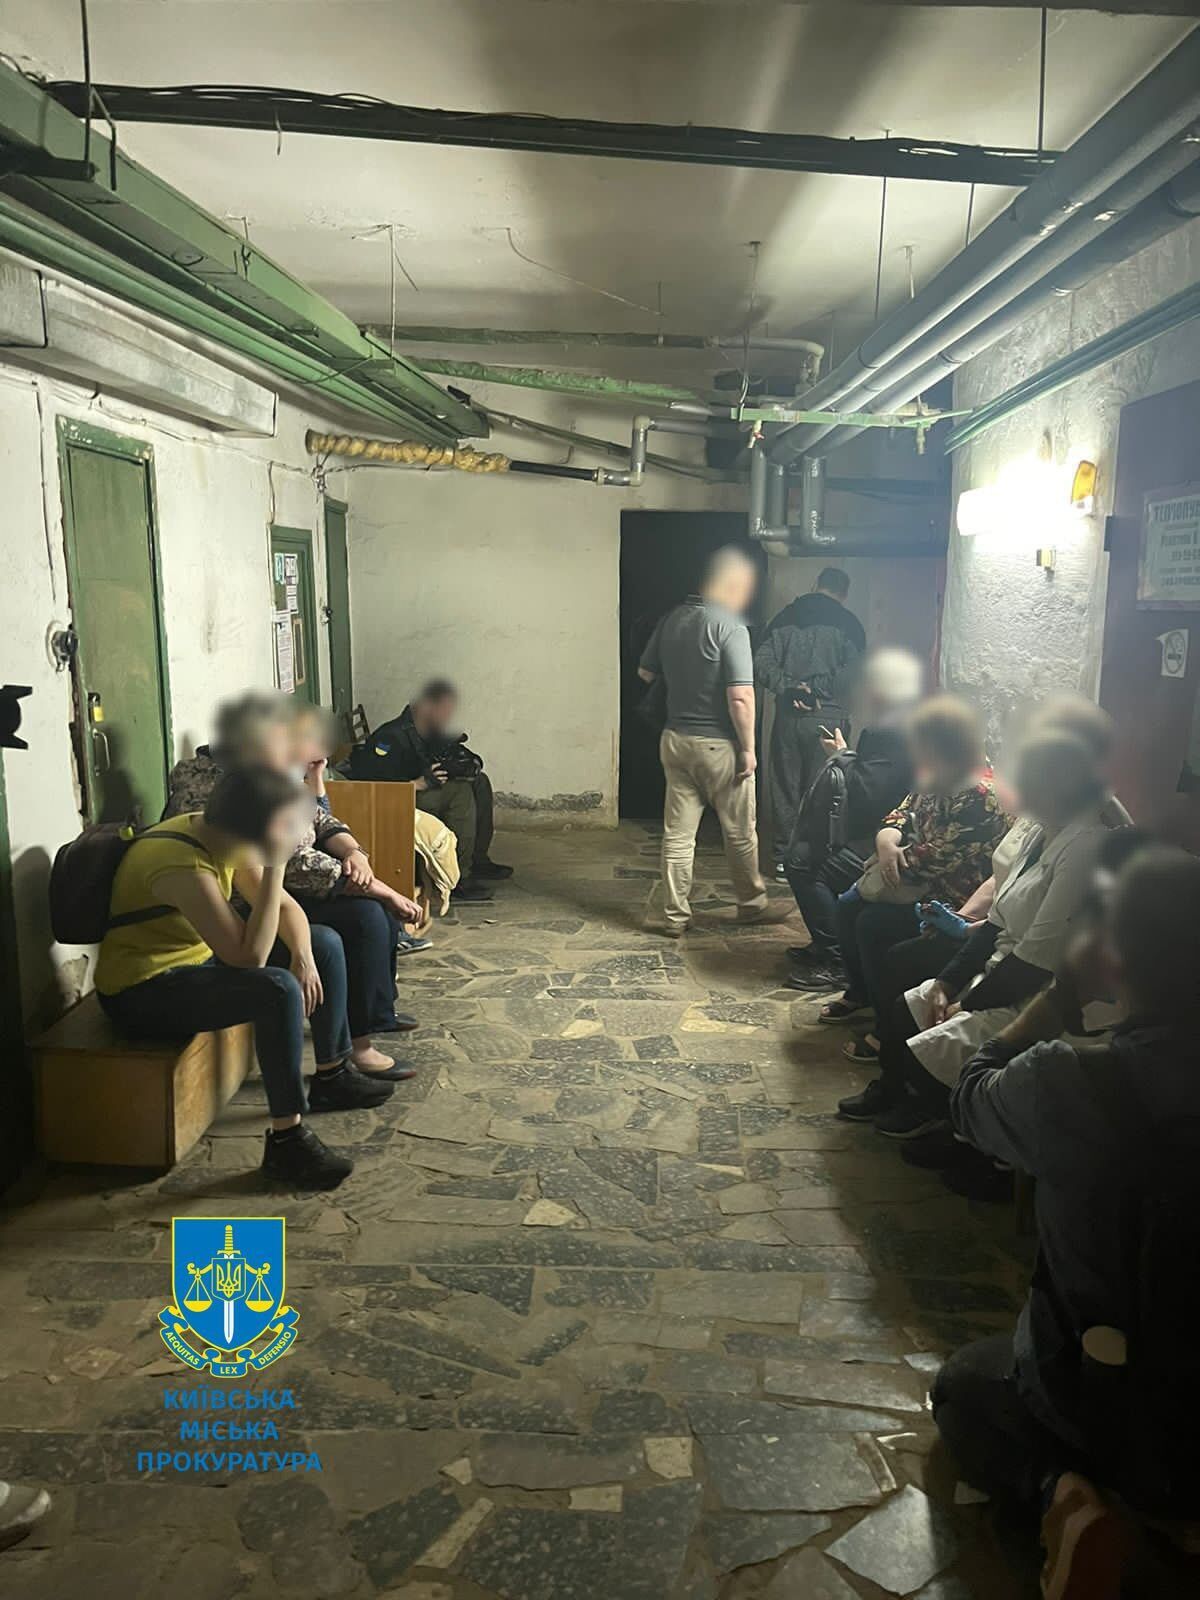 Гибель людей возле укрытия поликлиники в результате обстрела: в Киеве будут судить троих чиновников. Фото